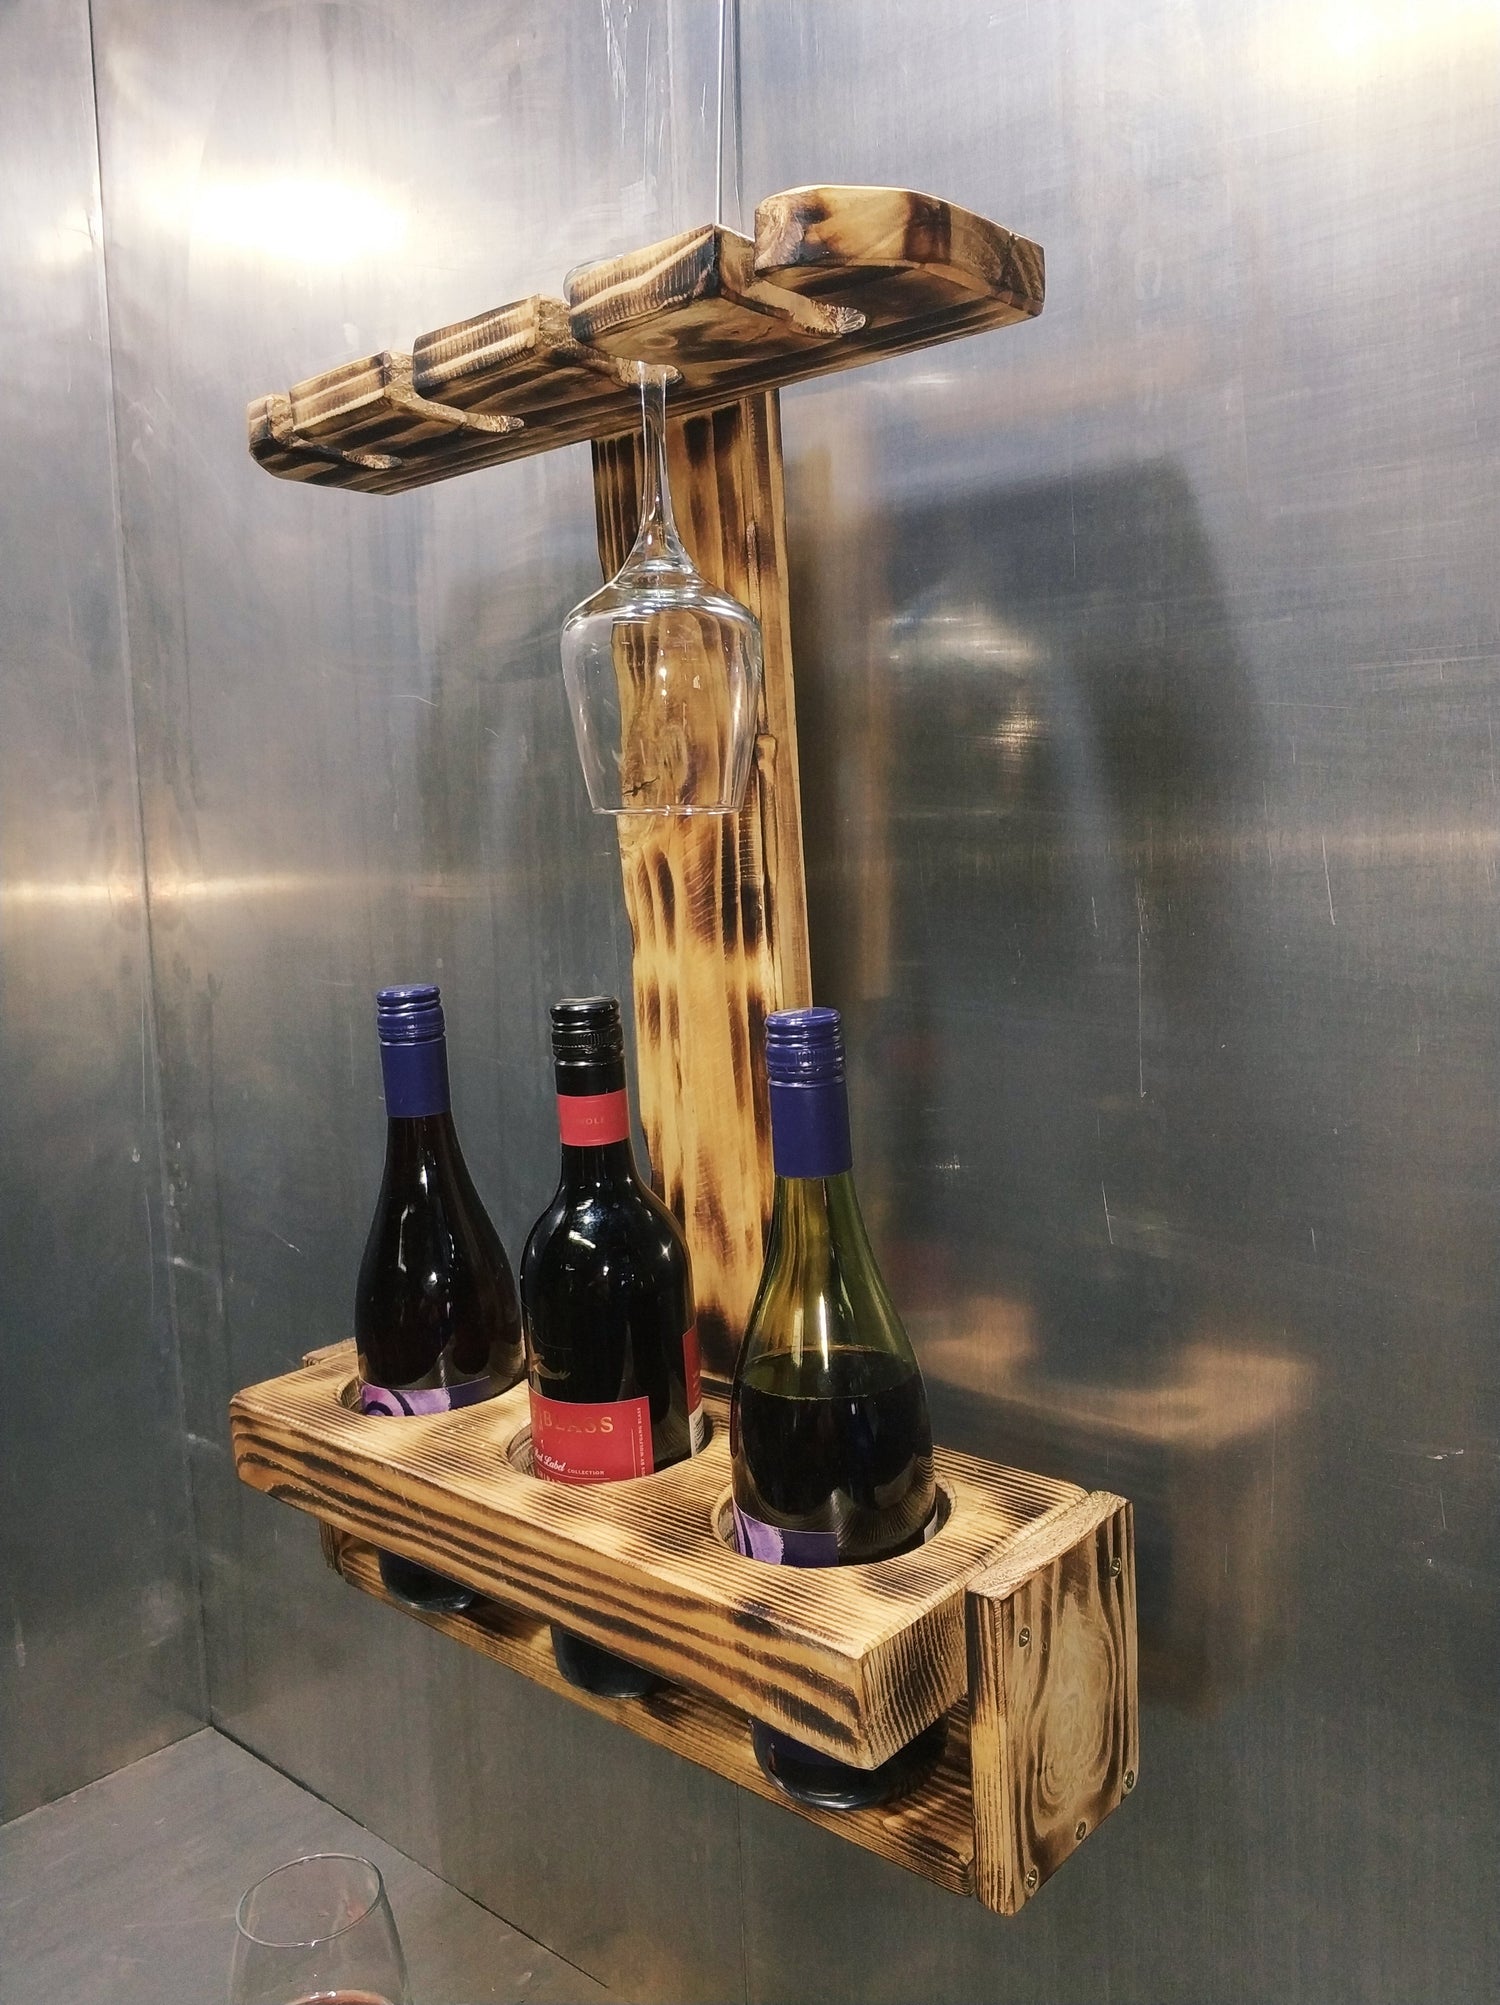 Coastal wine rack-Wine rack-Wall wine rack-Wine glass holder-Rustic wine shelf-Wine rack with cleats-Wine bottle storage-Wine bottle shelf